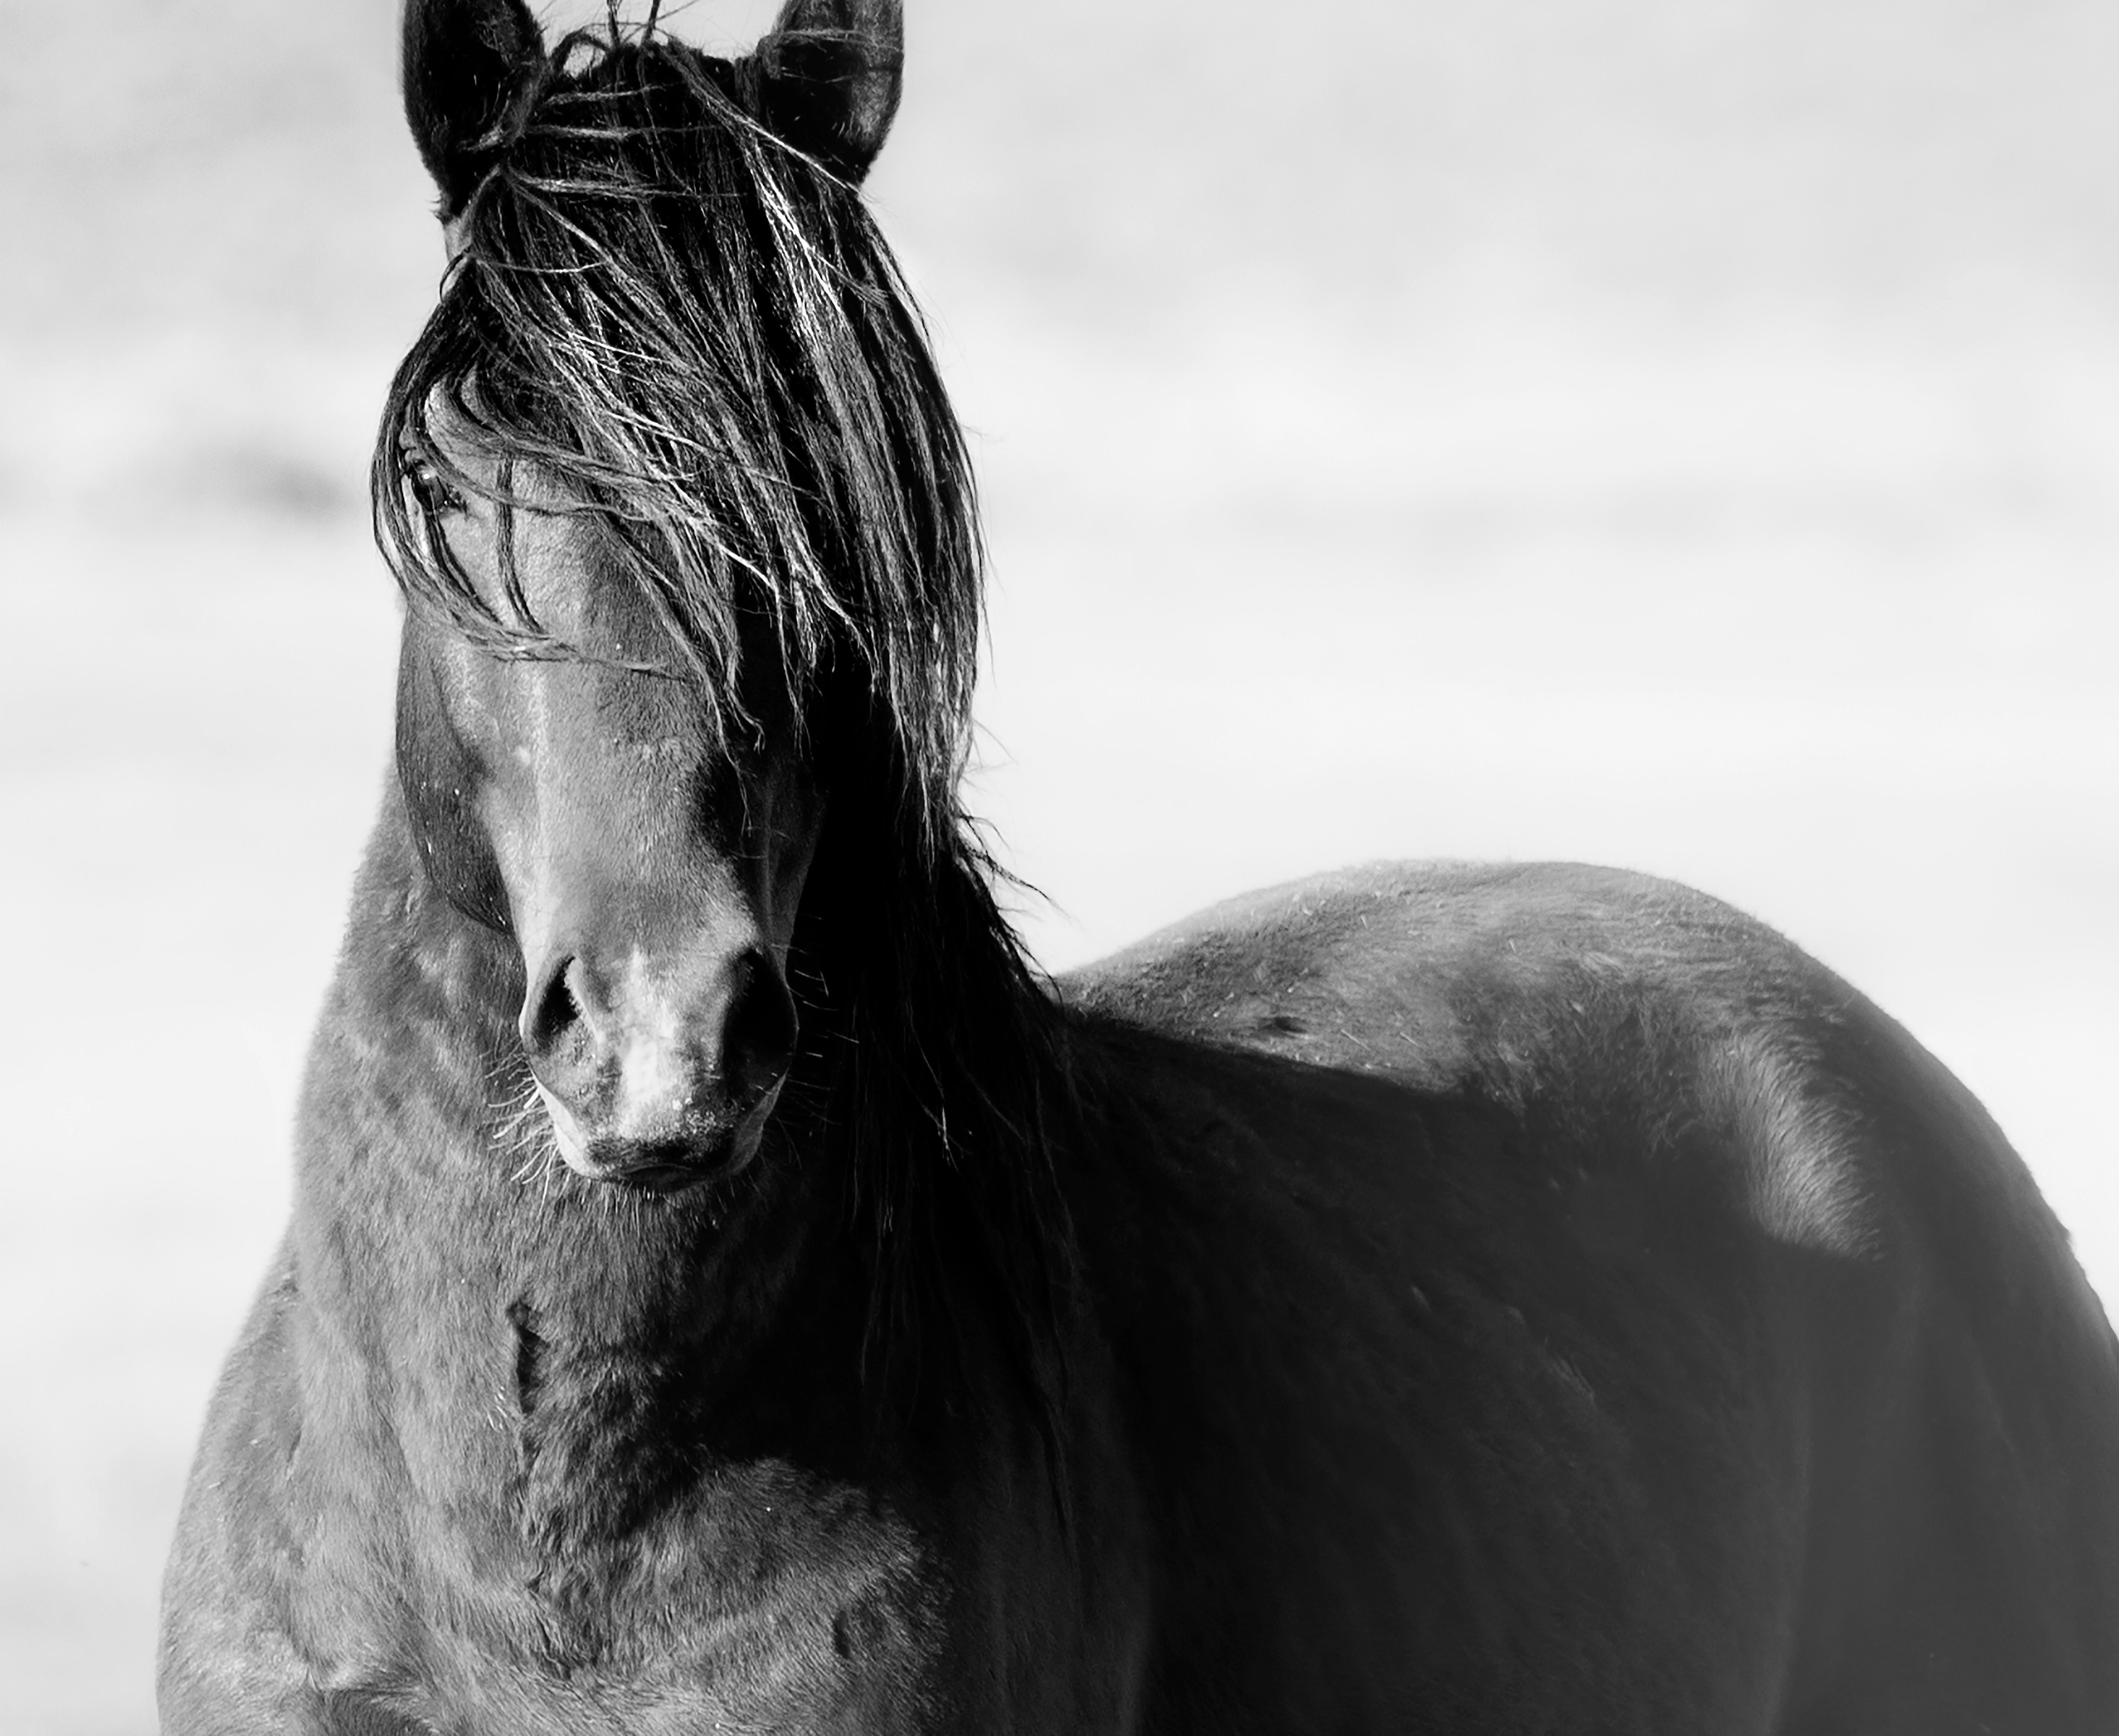 Black and White Photograph Shane Russeck - "Wild" 36x48 Photographie en noir et blanc du Wild Horse Mustang  Fine Art signé